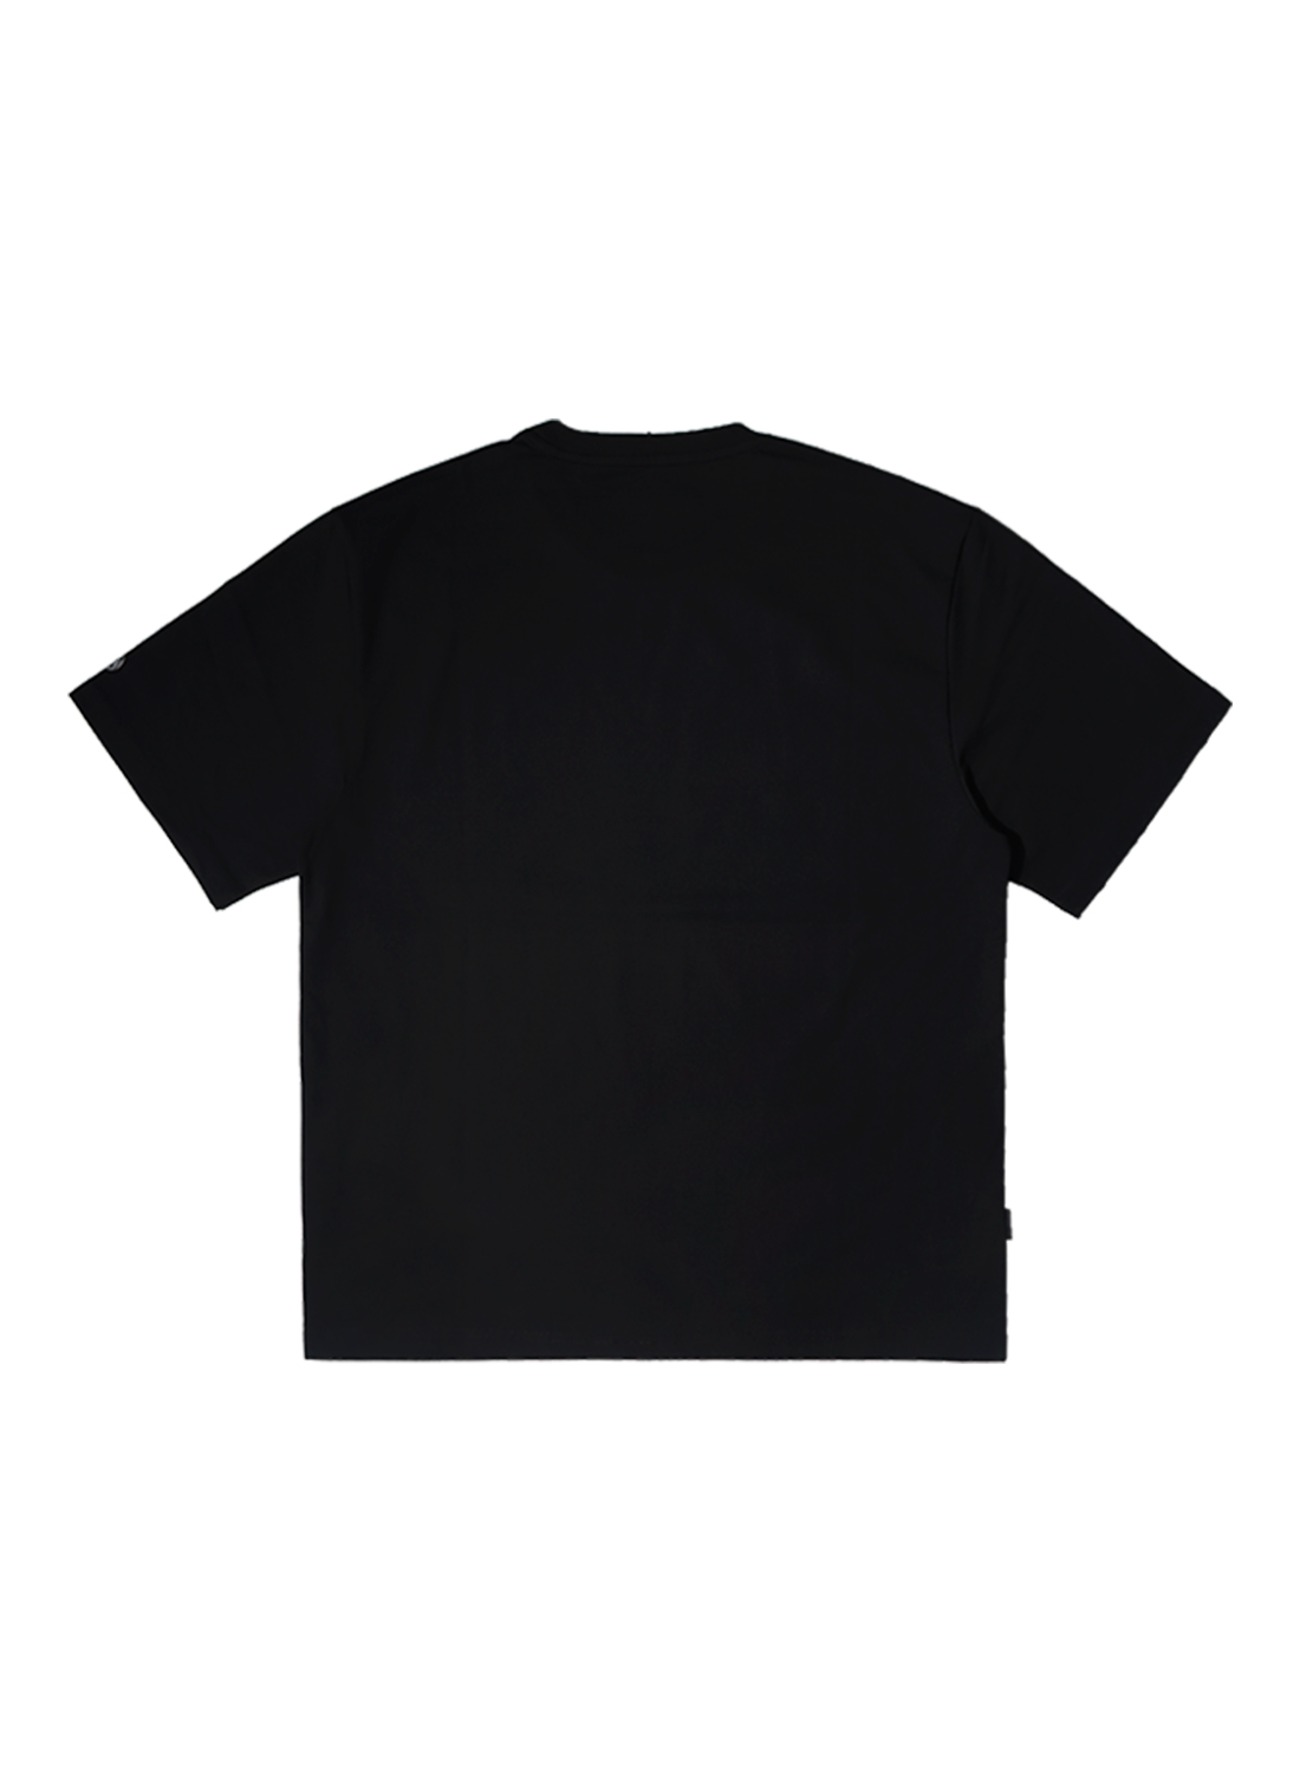 OG 베이직 포켓 로고 티셔츠-블랙